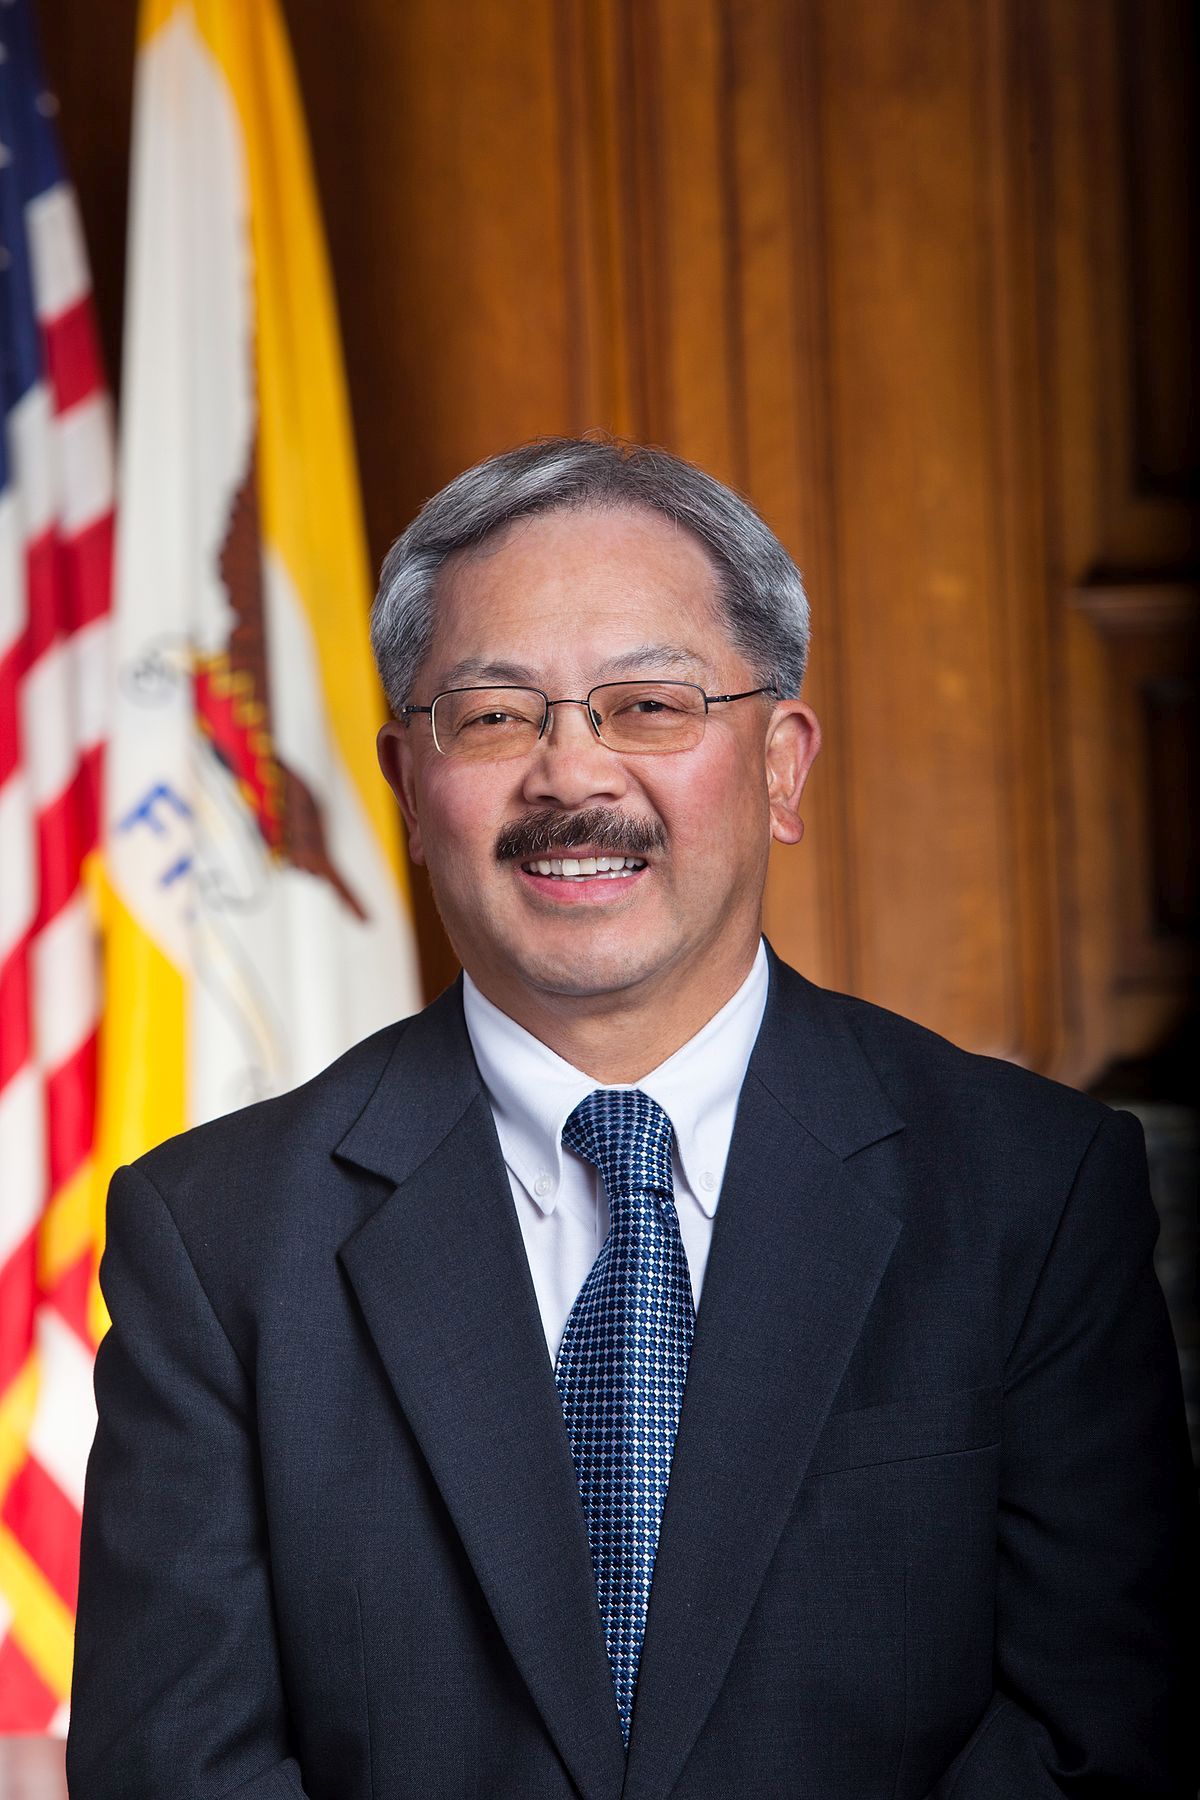 Ed Lee, Mayor of San Francisco